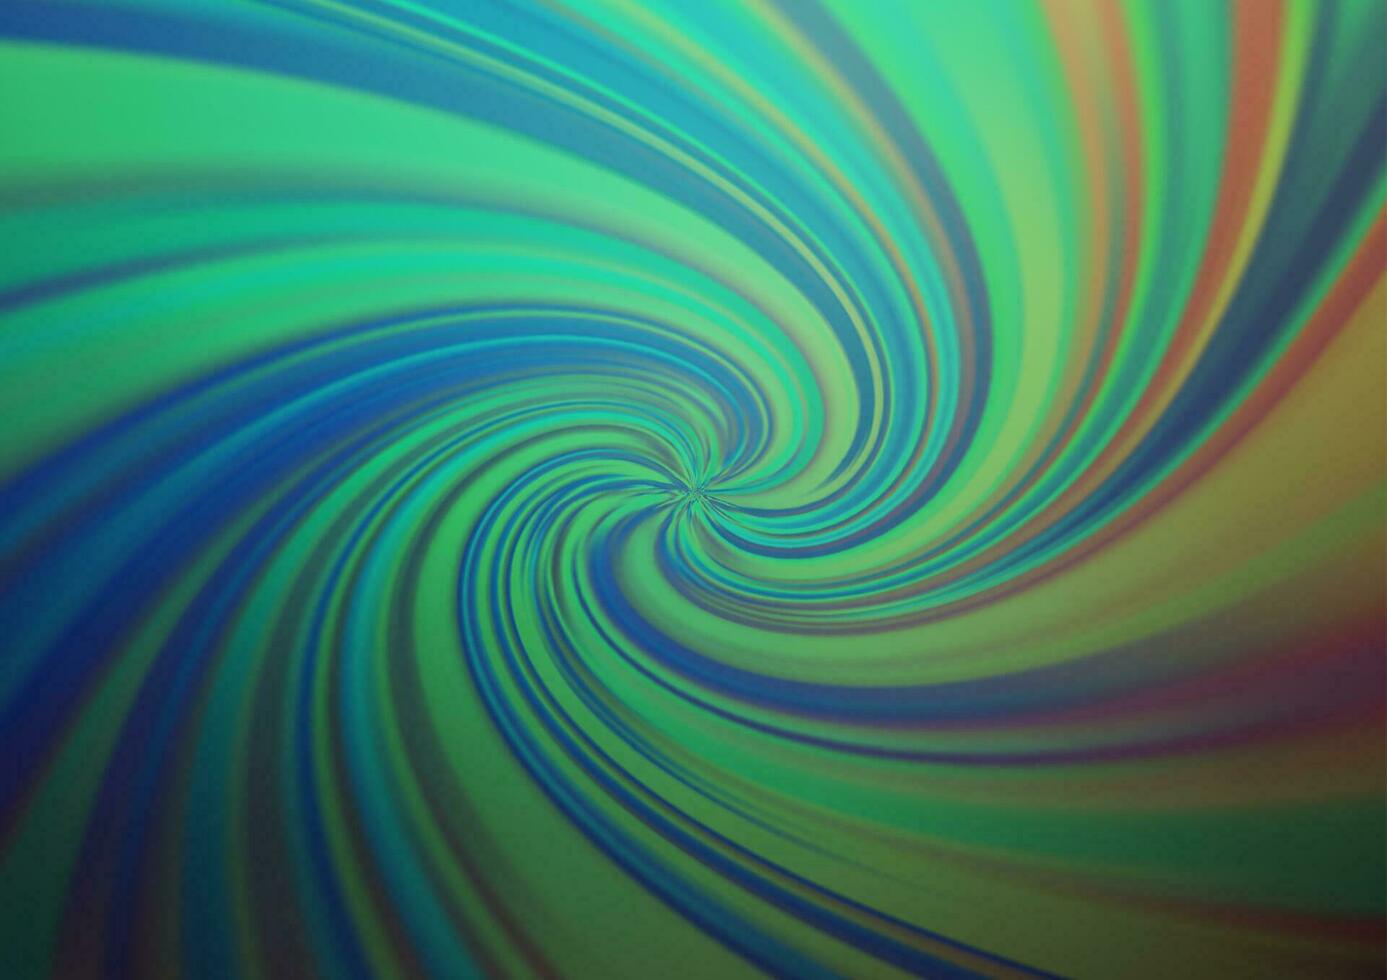 patrón borroso abstracto de vector azul claro, verde.